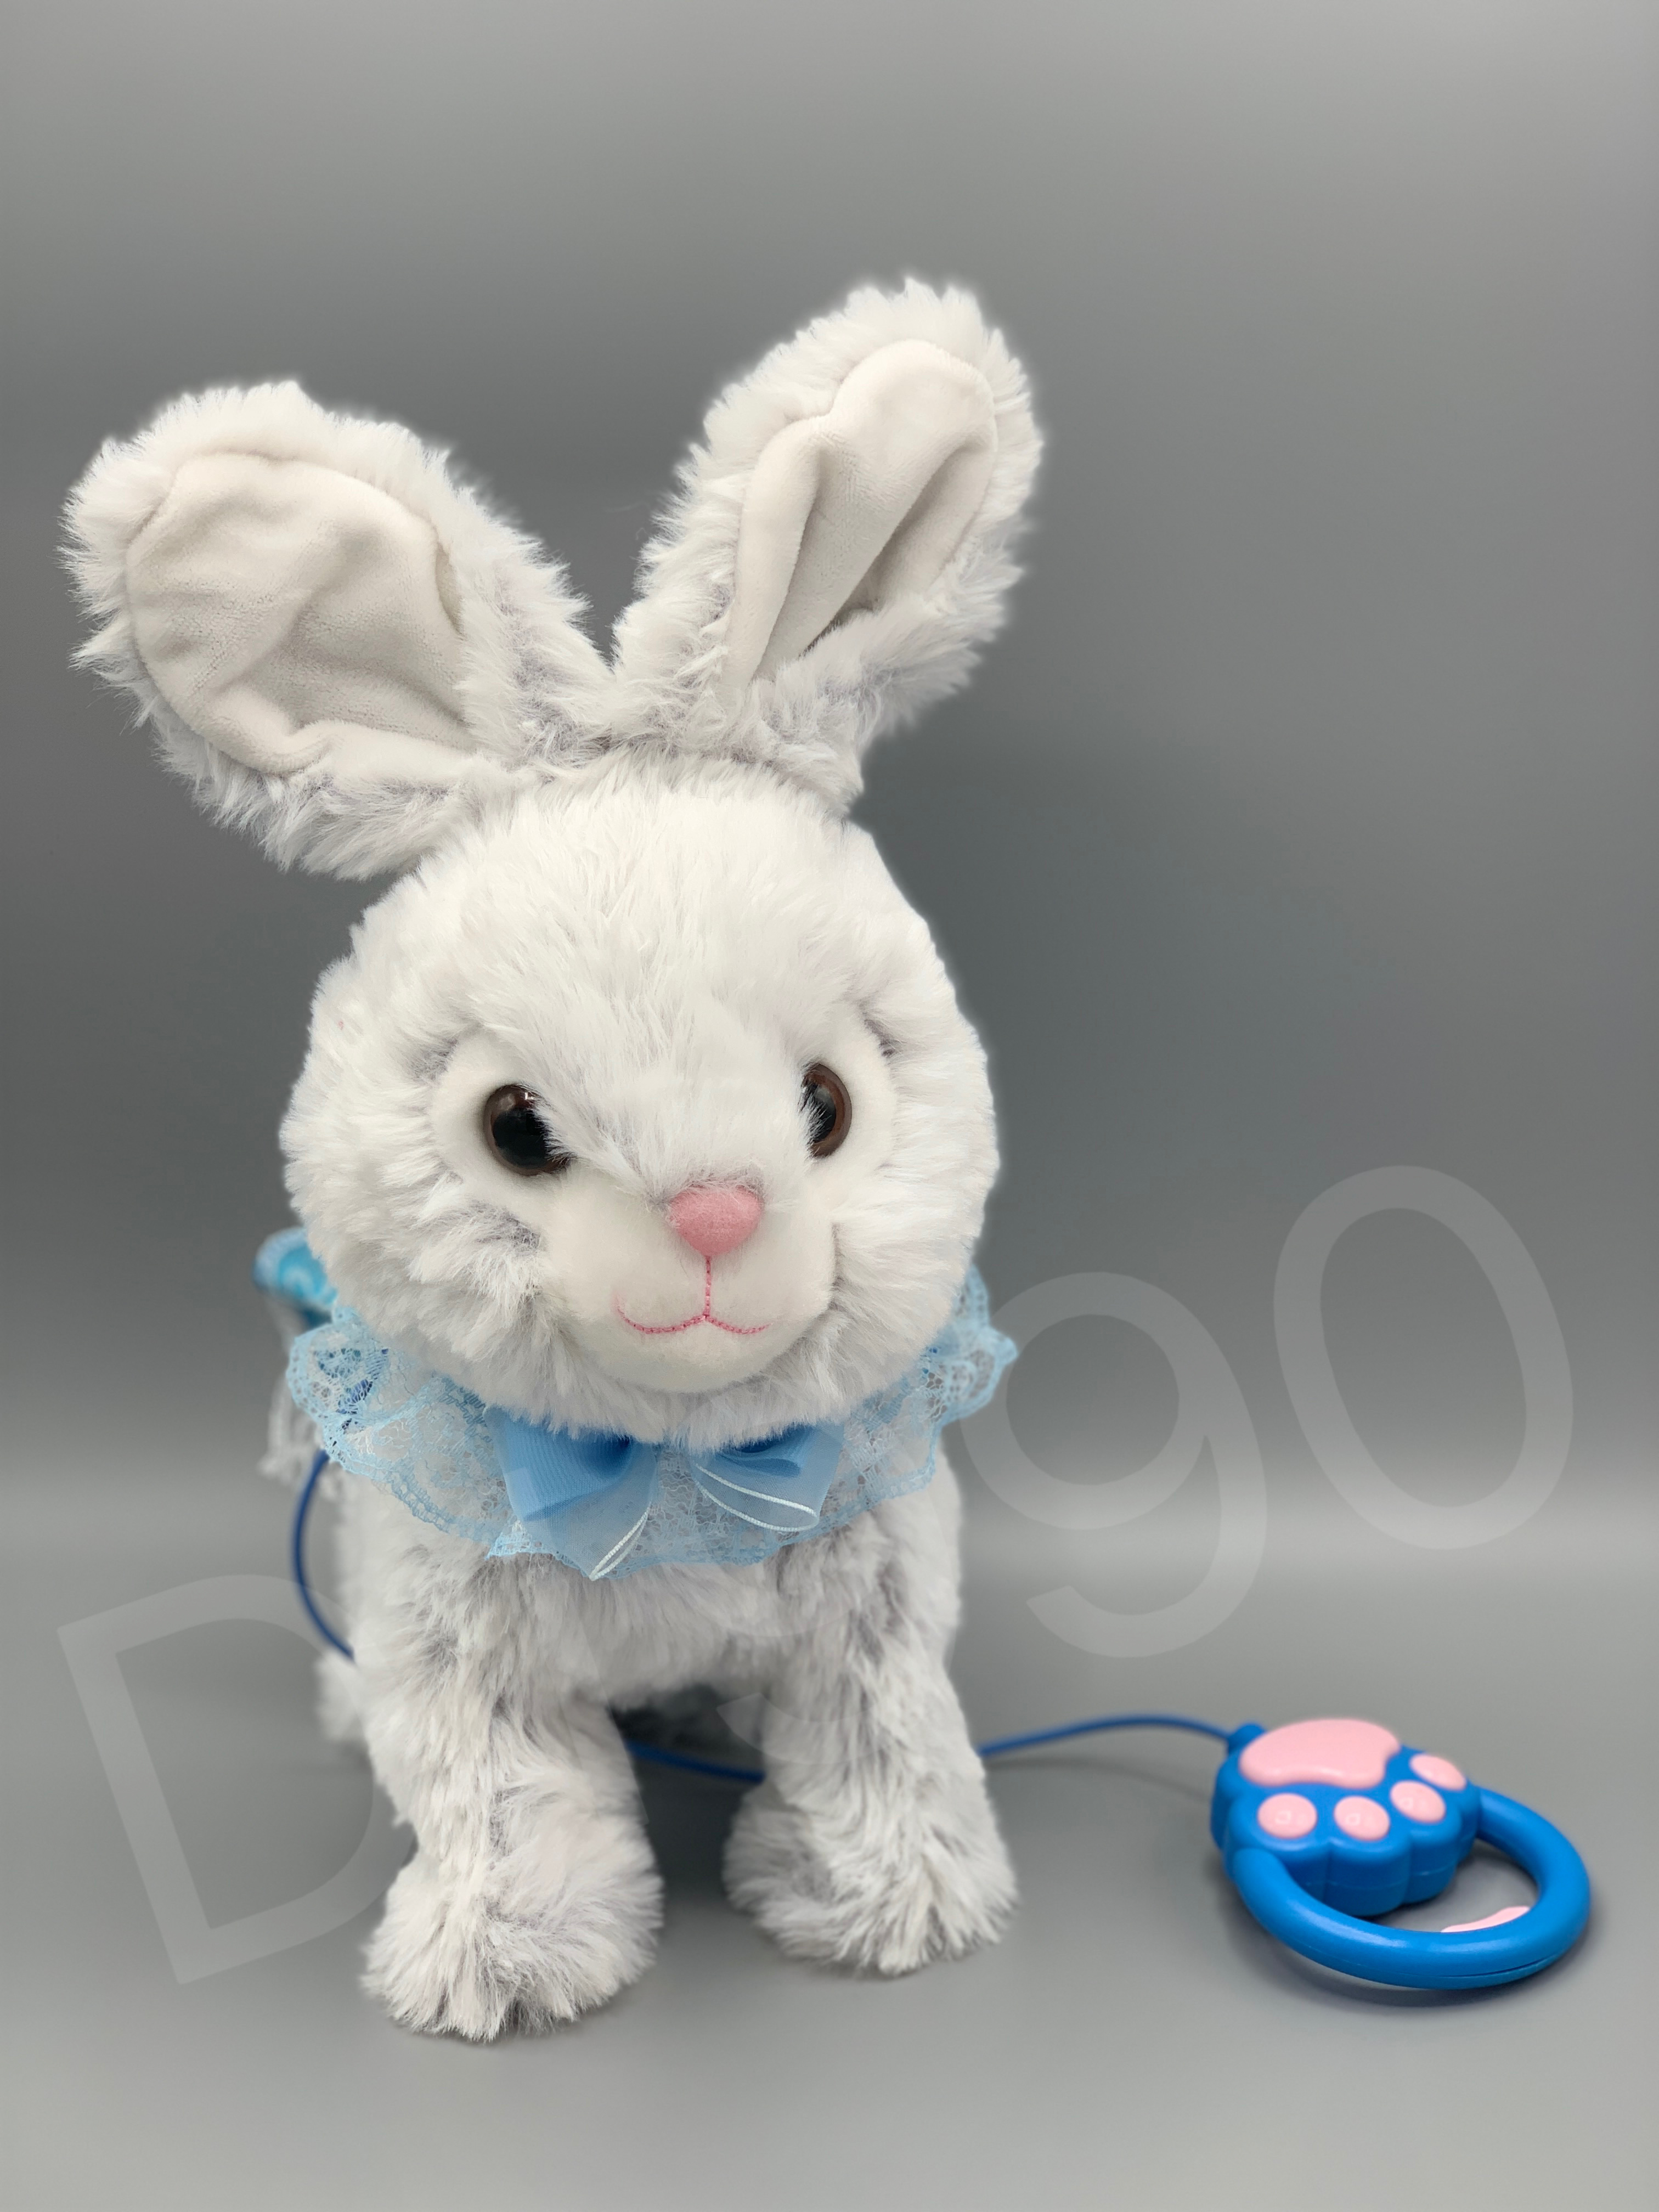 毛绒电动玩具兔子会蹦会走会唱歌能录音的玩具公仔兔子外贸跨境批发